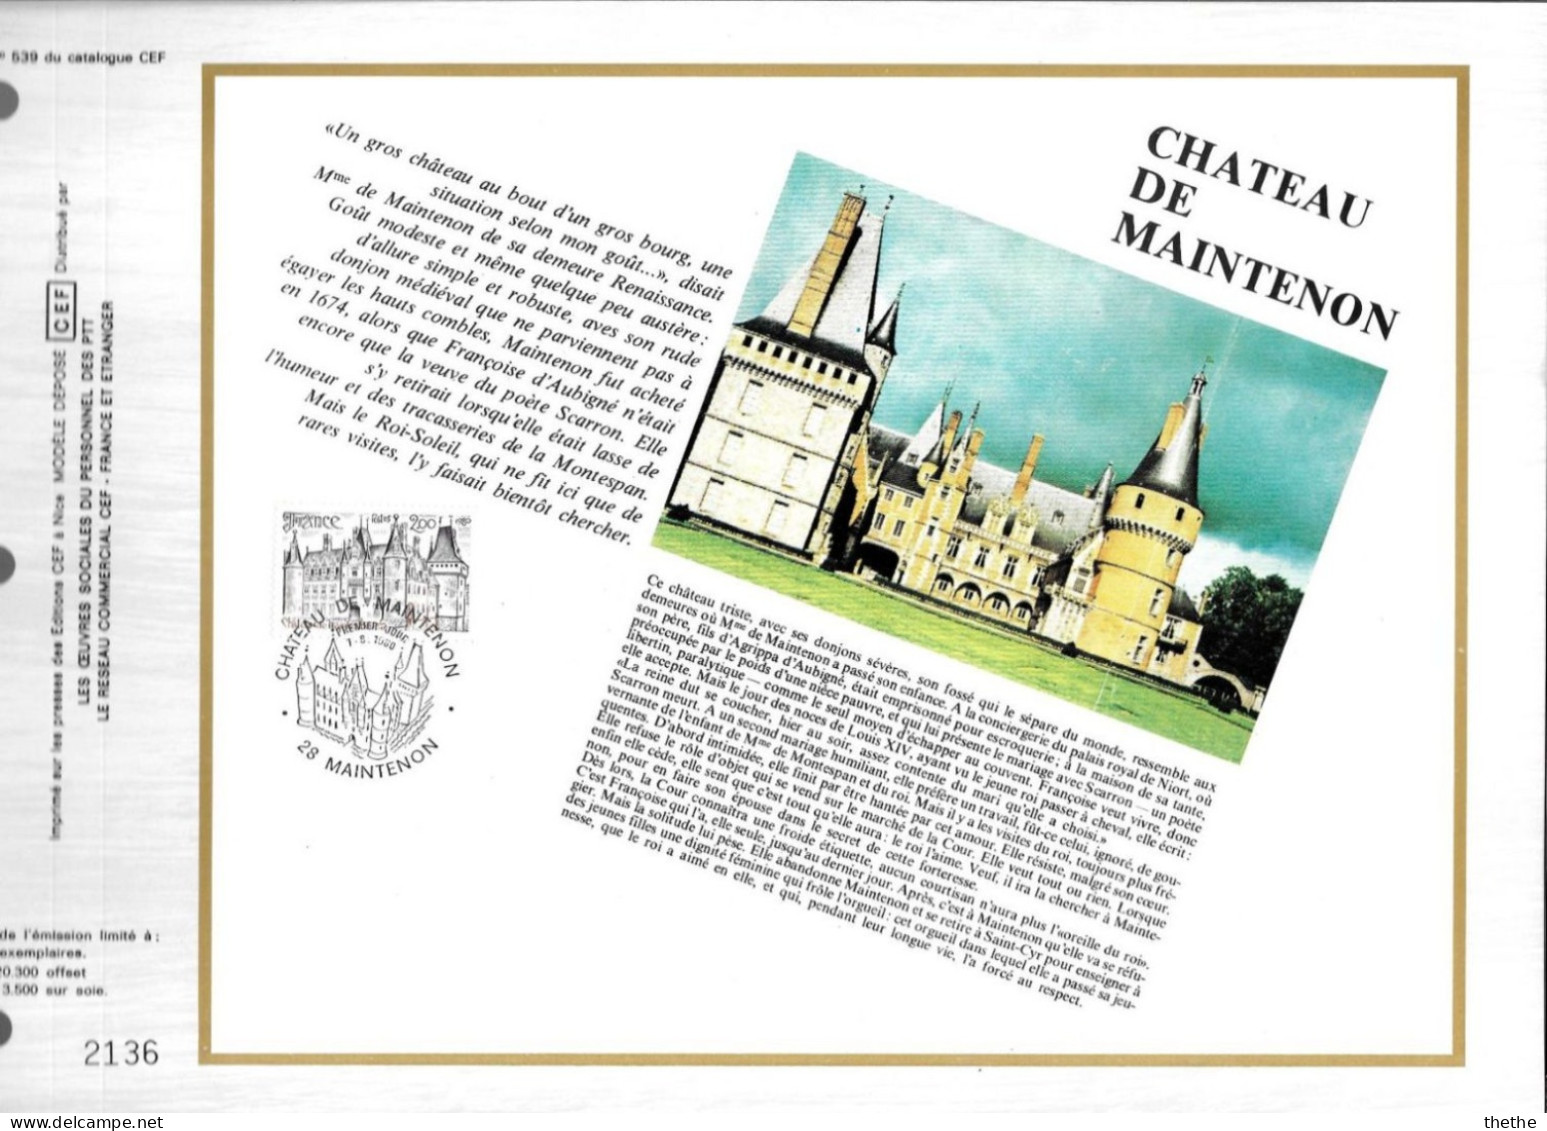 FRANCE -  Château De MAINTENON - N° 539 Du Catalogue CEF - 1980-1989